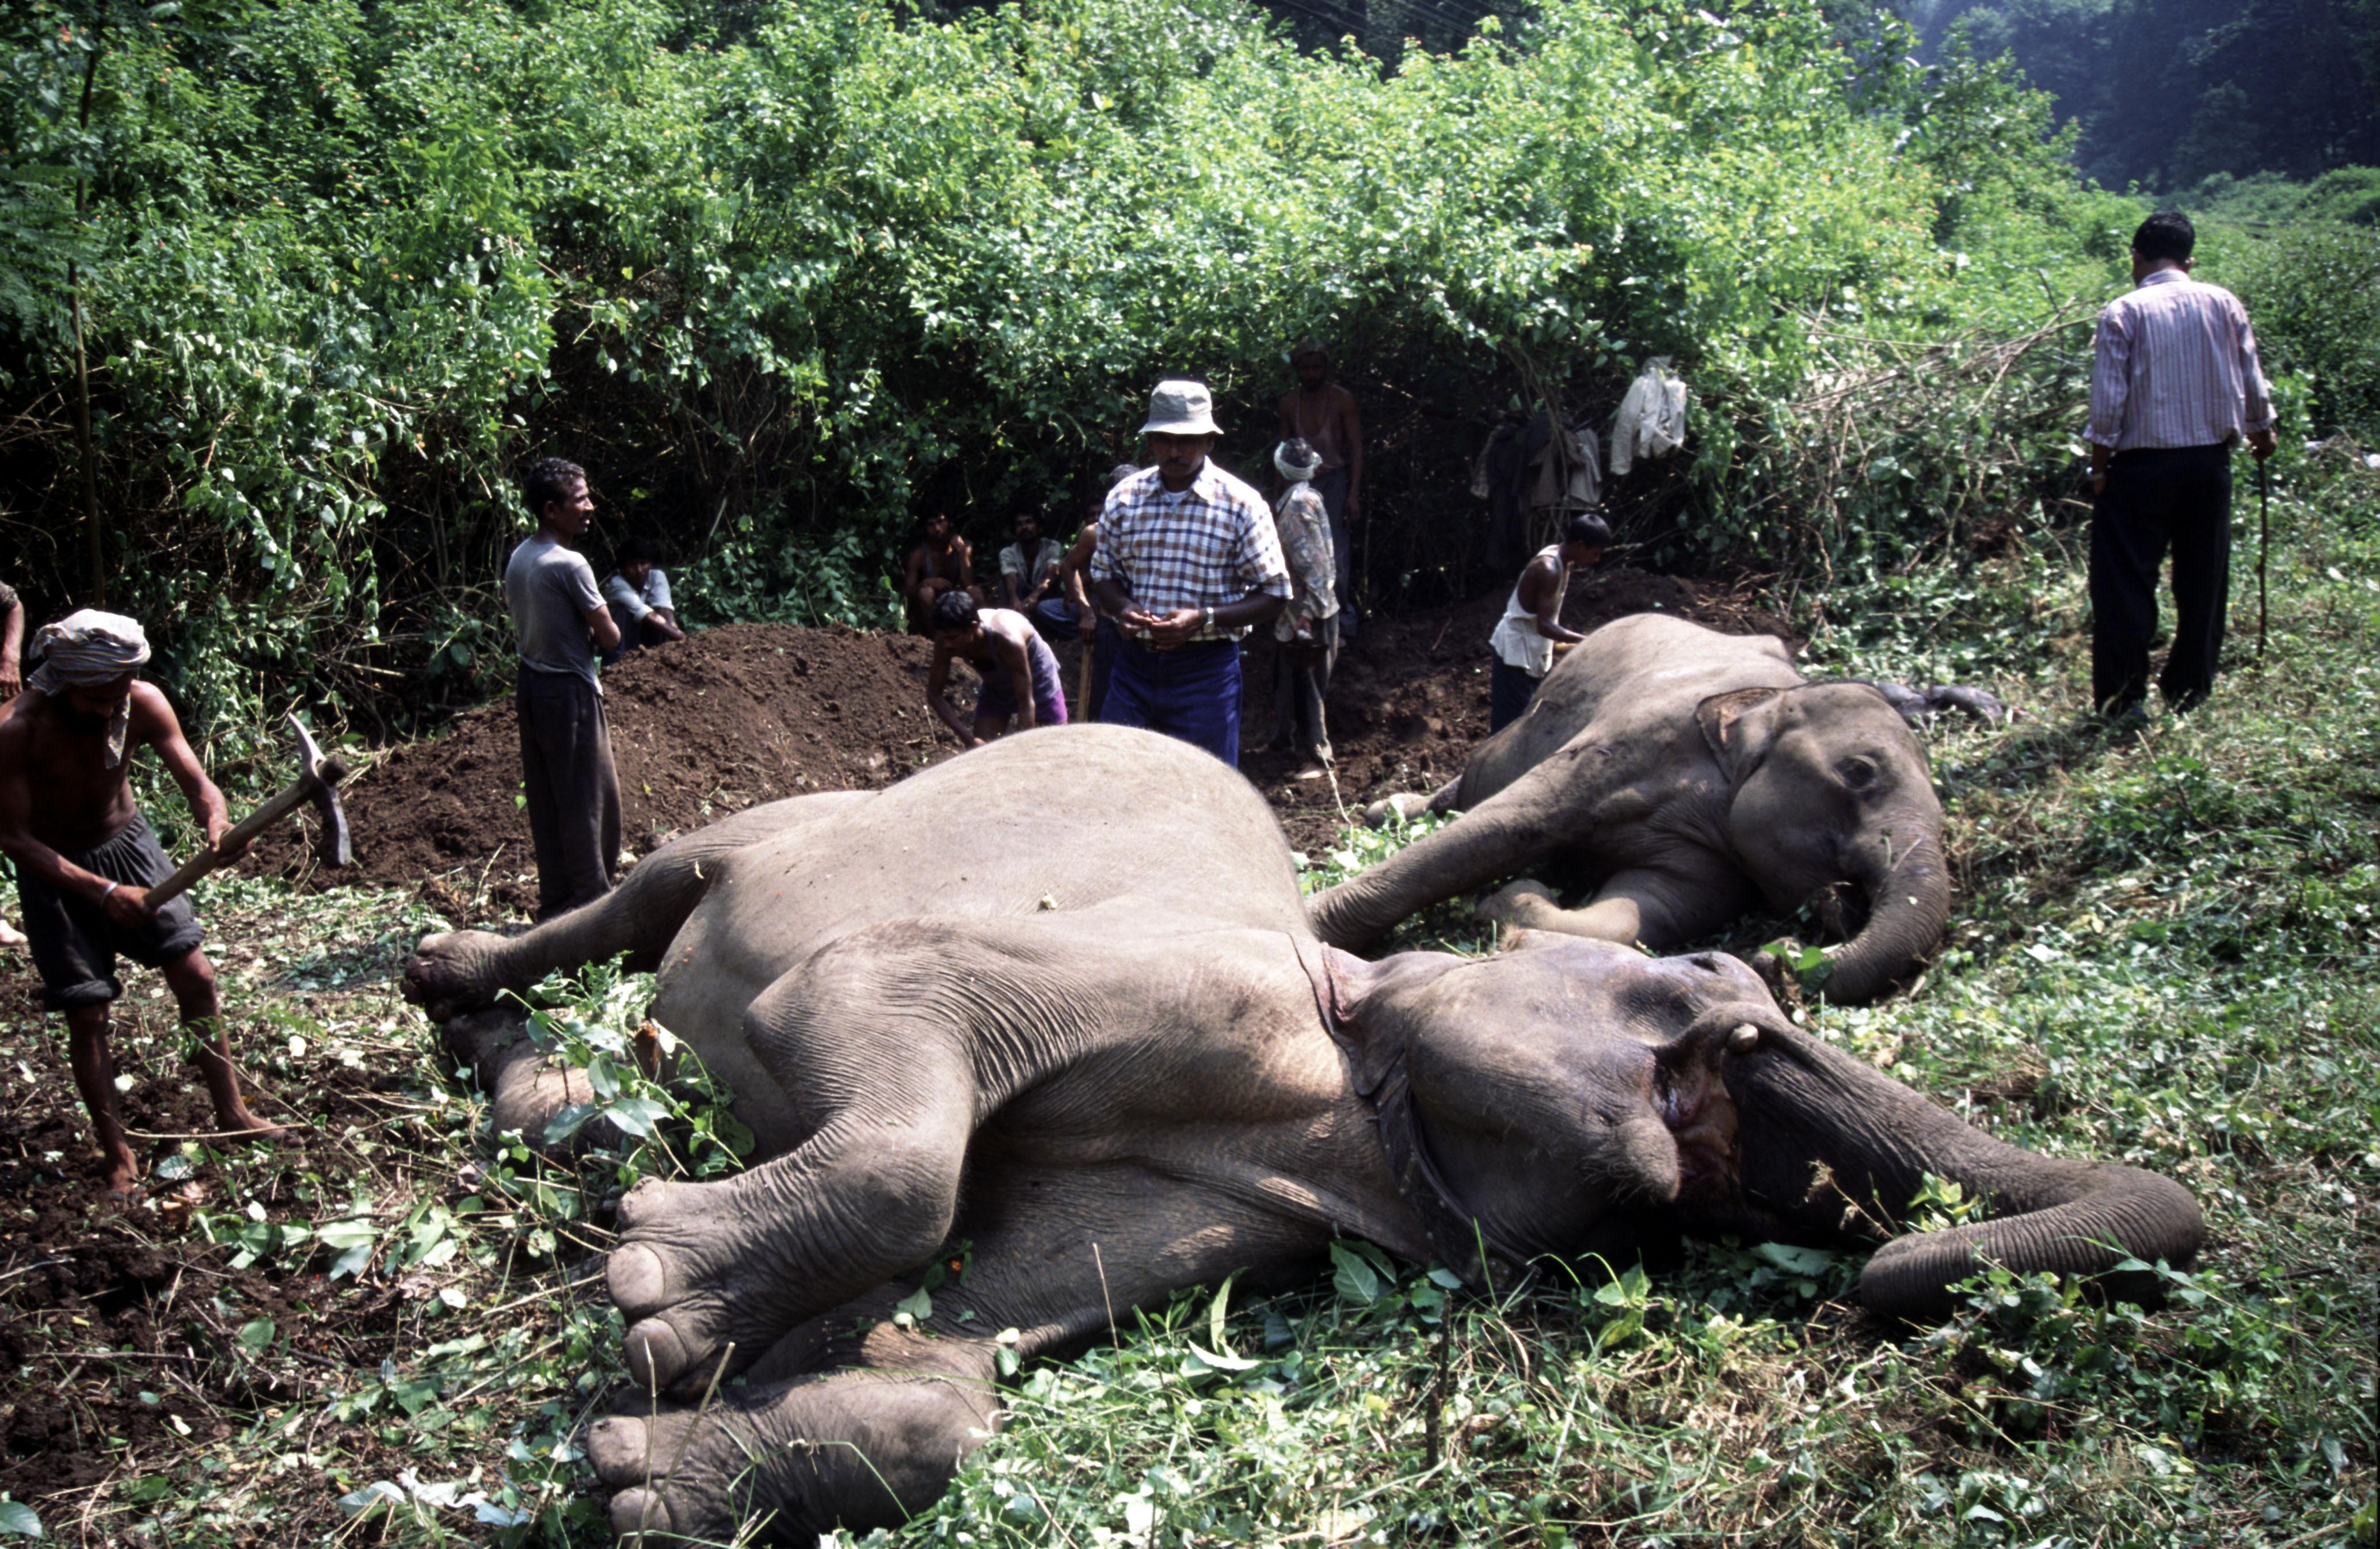 Gli elefanti, come i rinoceronti, sono tra gli animali più cacciati e mutilati a causa della corsa all'avorio (Rajaji National Park, India).